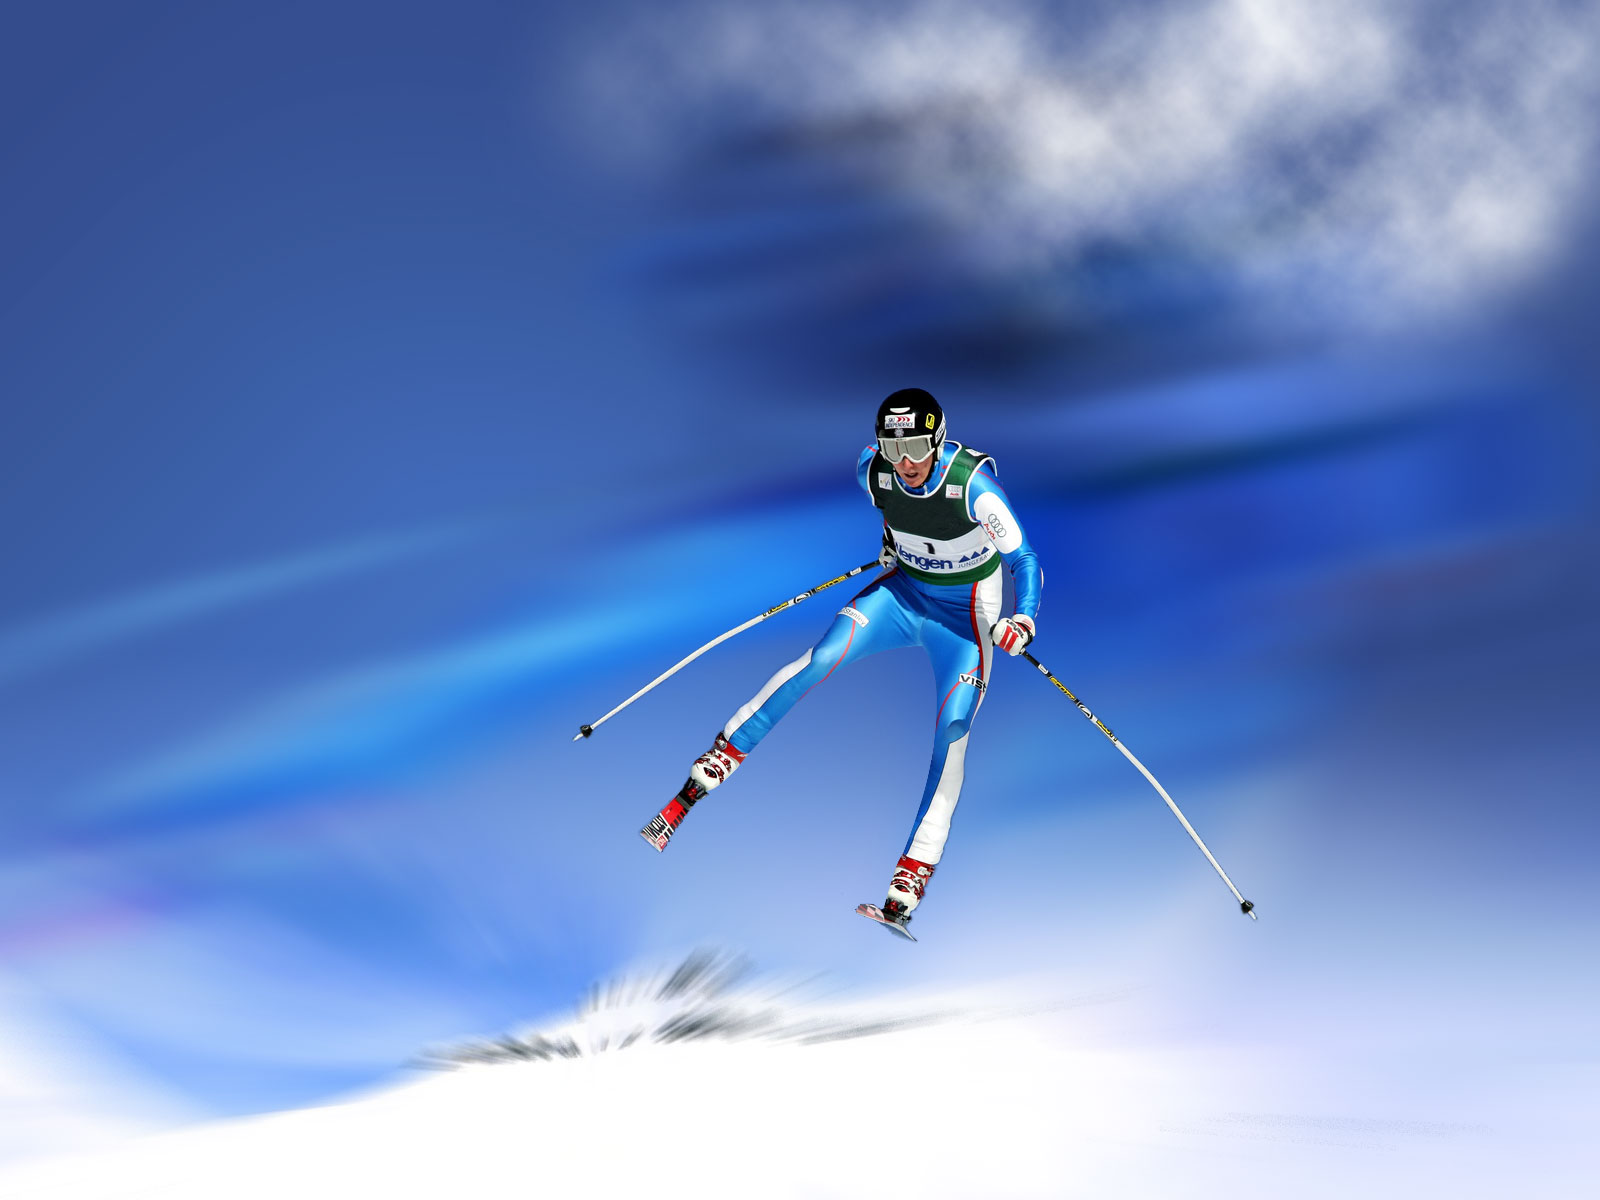 Skieur en action